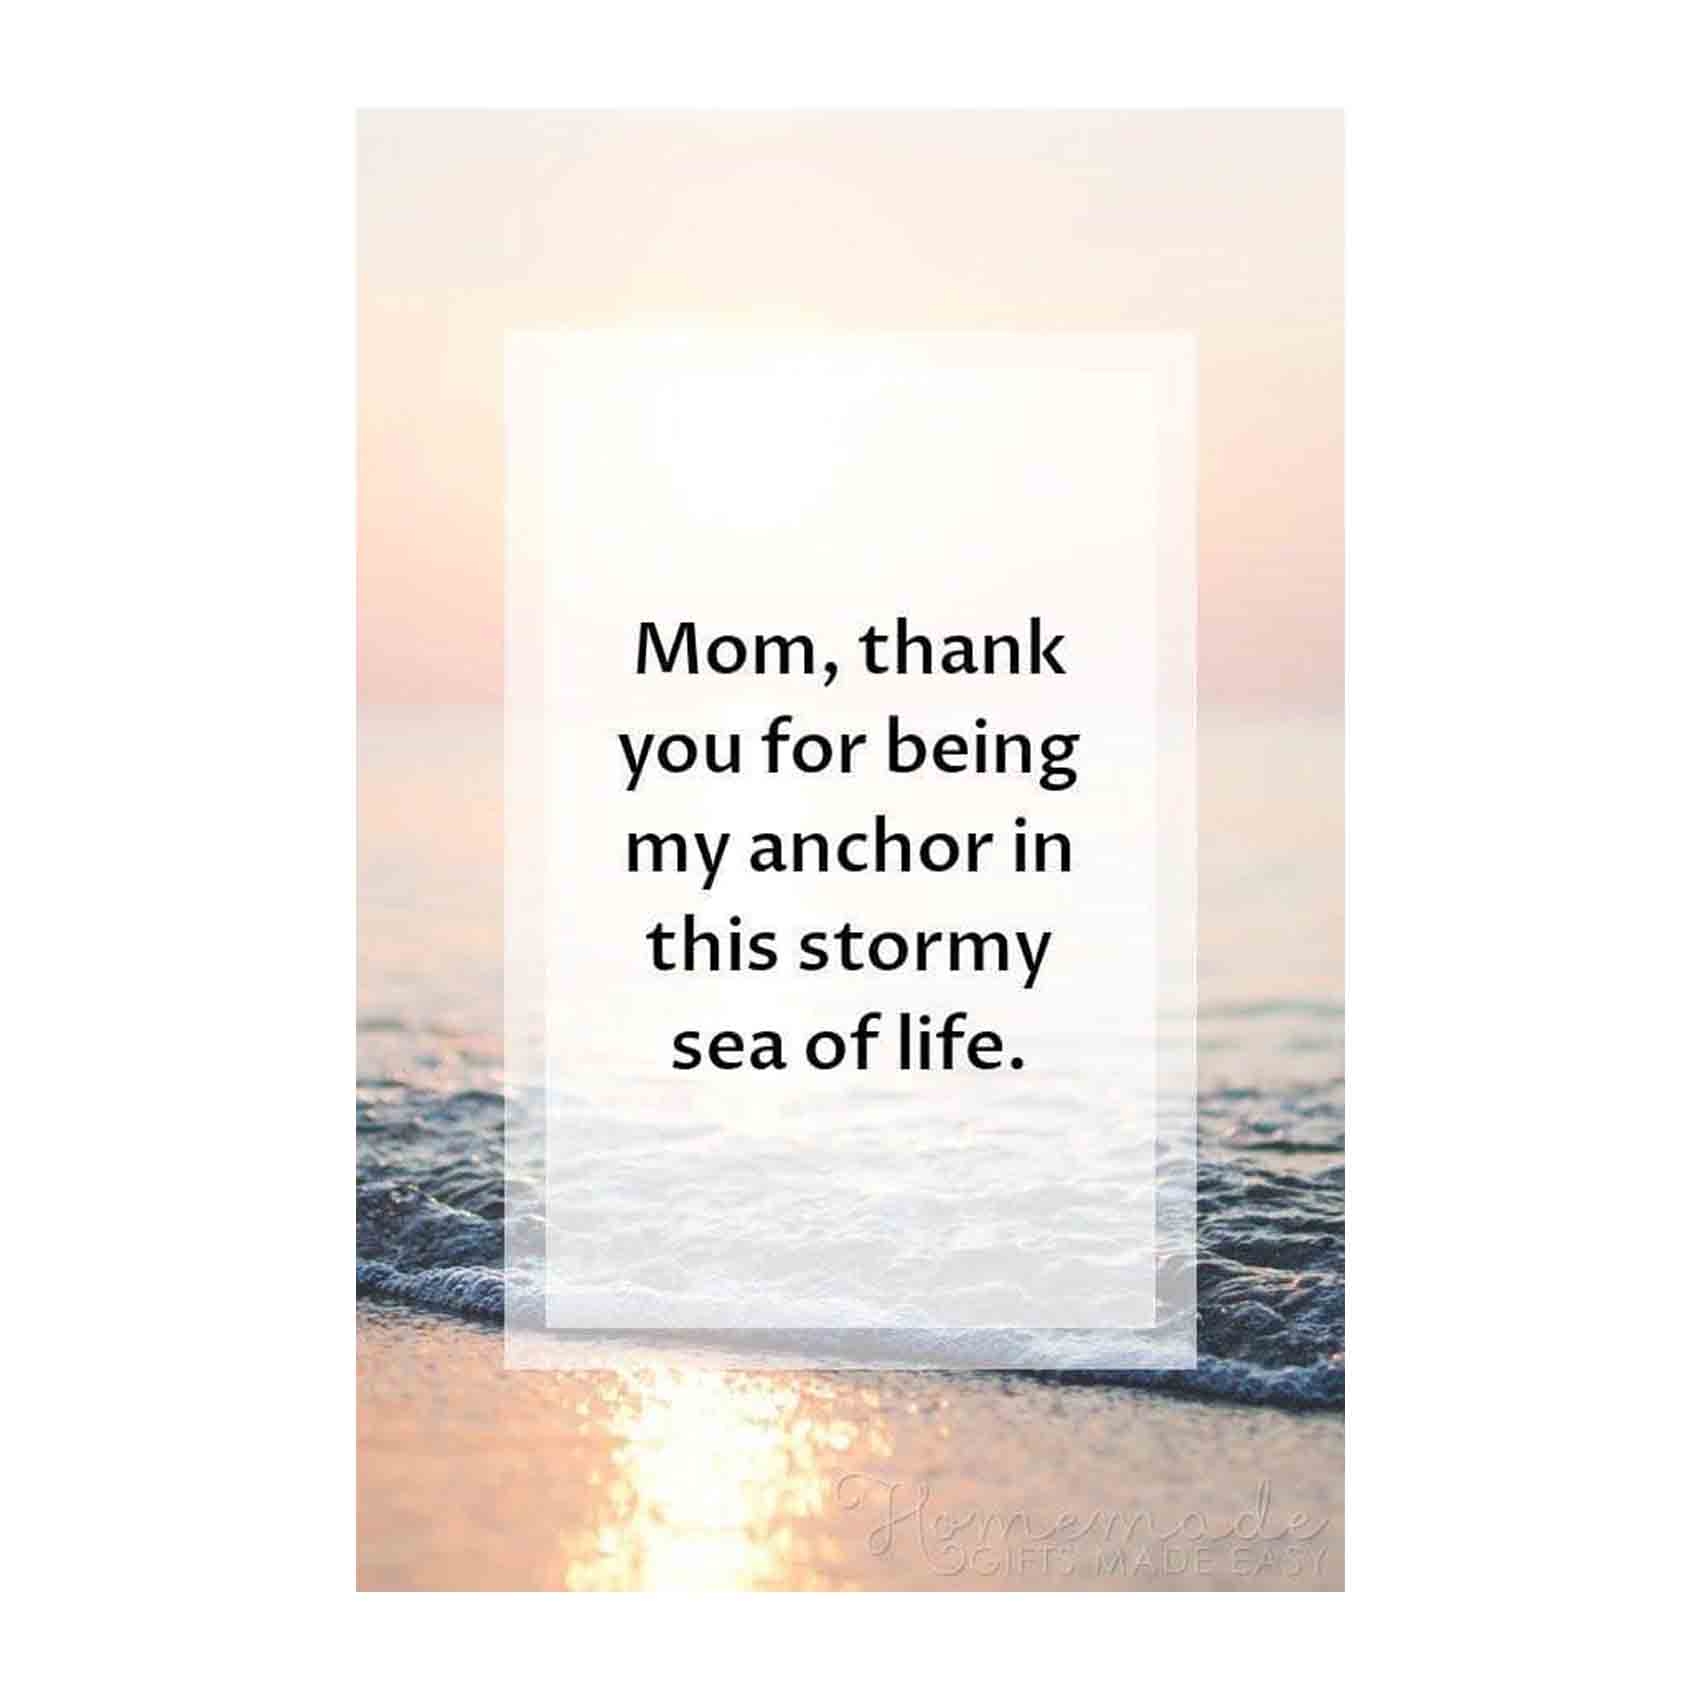 کارت پستال رادکس طرح تبریک روز مادر کد s59